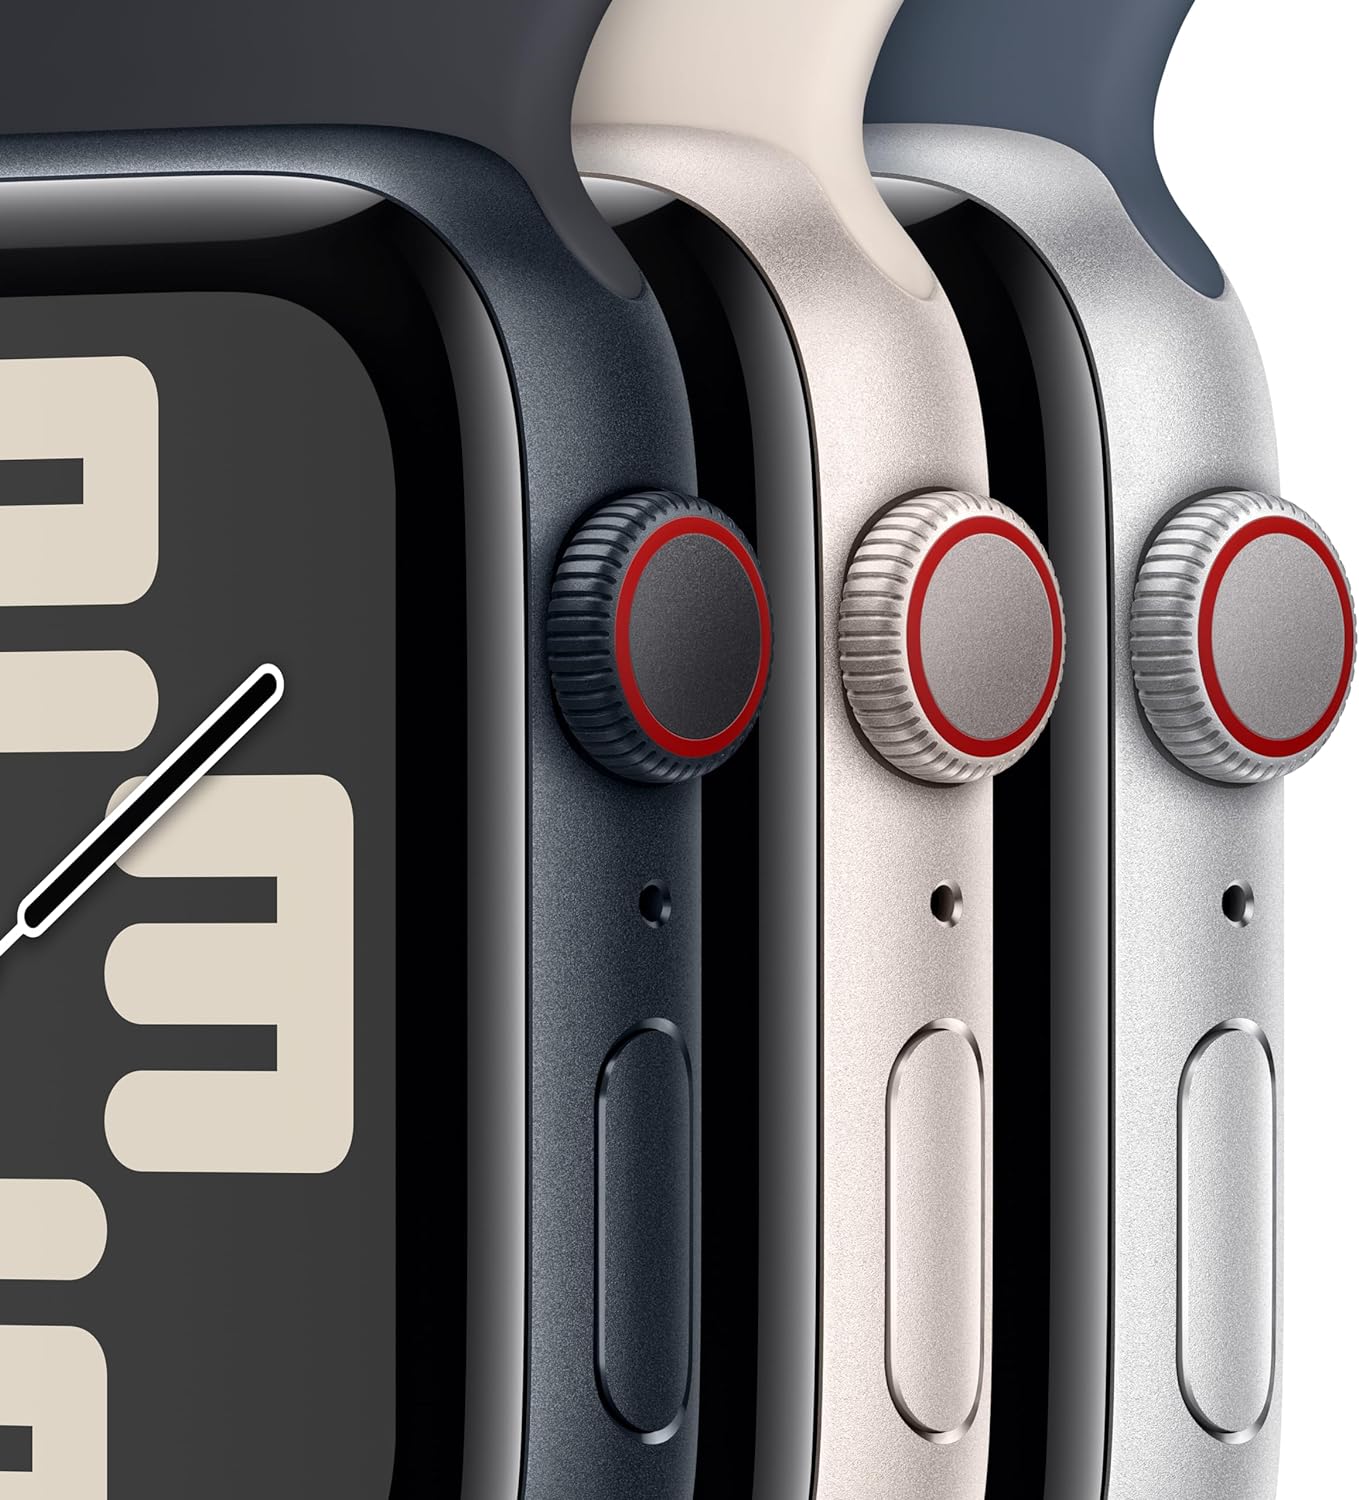 Apple Watch SE (الجيل الثاني) [GPS + Cellular 44mm] ساعة ذكية مع هيكل من الألومنيوم Starlight مع حزام Starlight الرياضي M/L. جهاز تتبع اللياقة البدنية والنوم، واكتشاف الأعطال، ومراقبة معدل ضربات القلب 